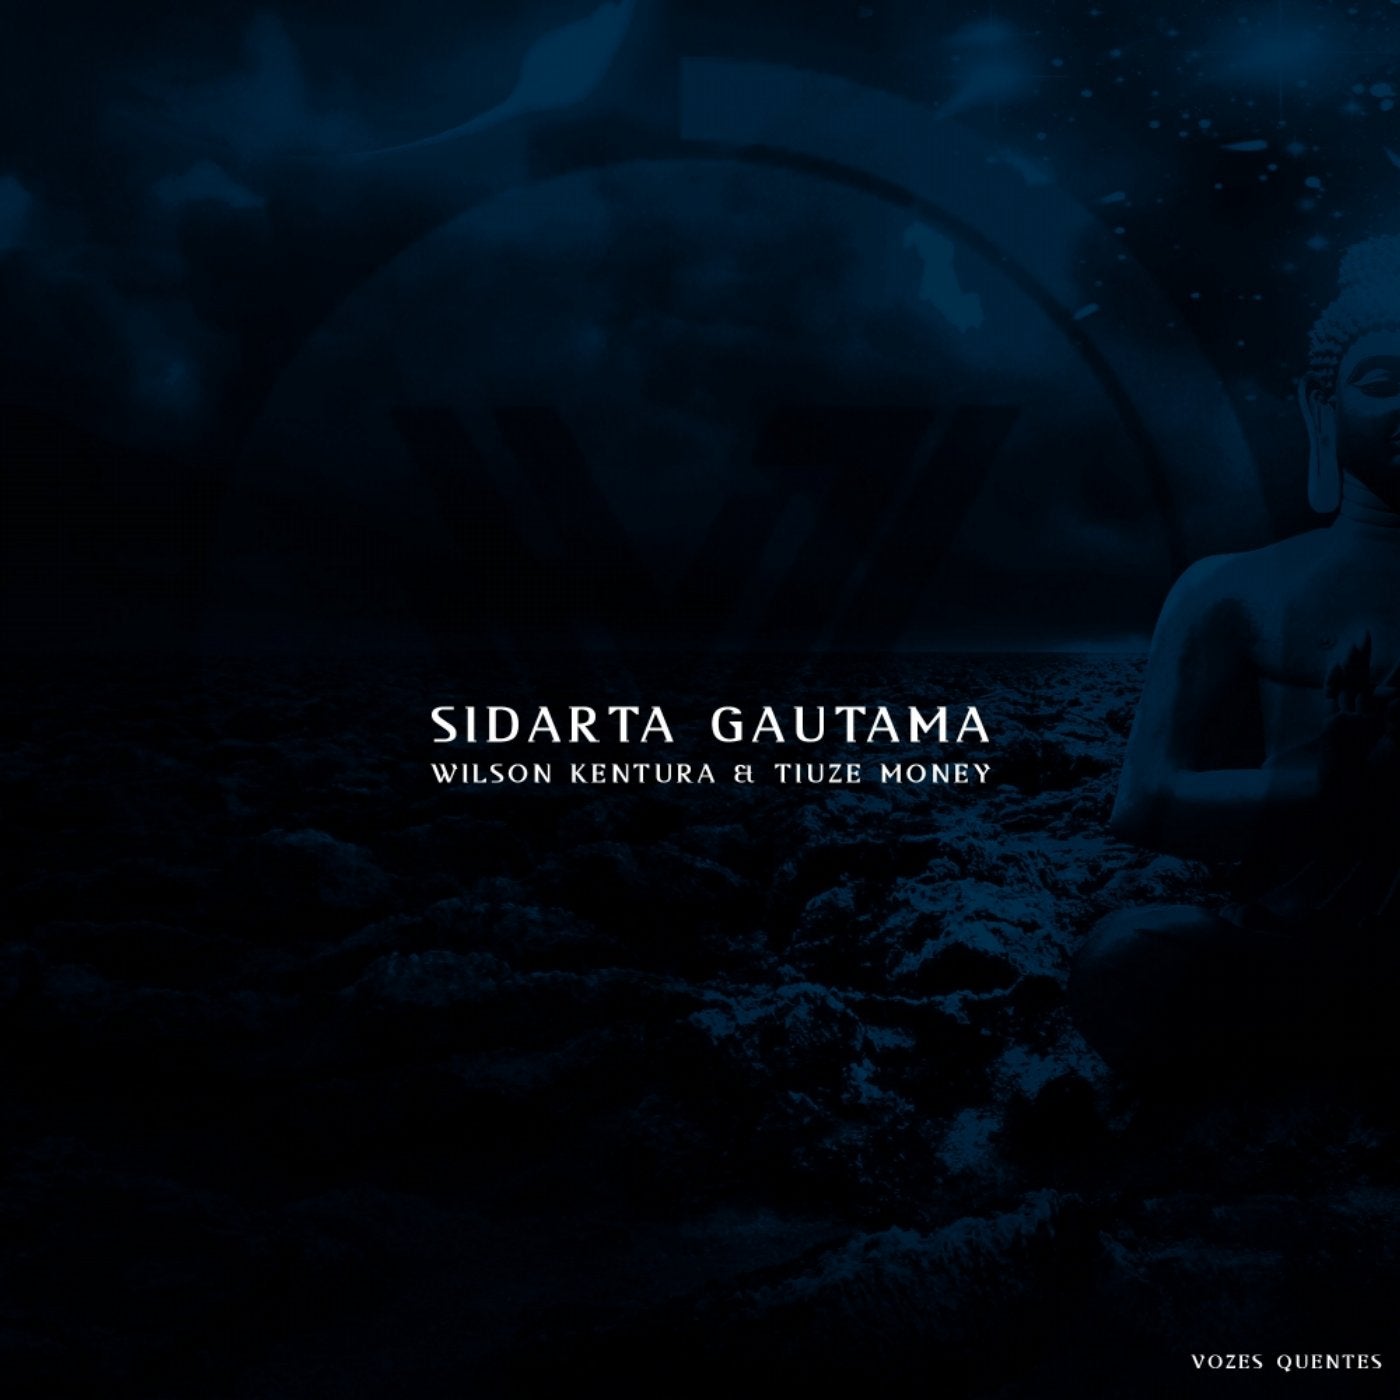 Sidarta Gautama